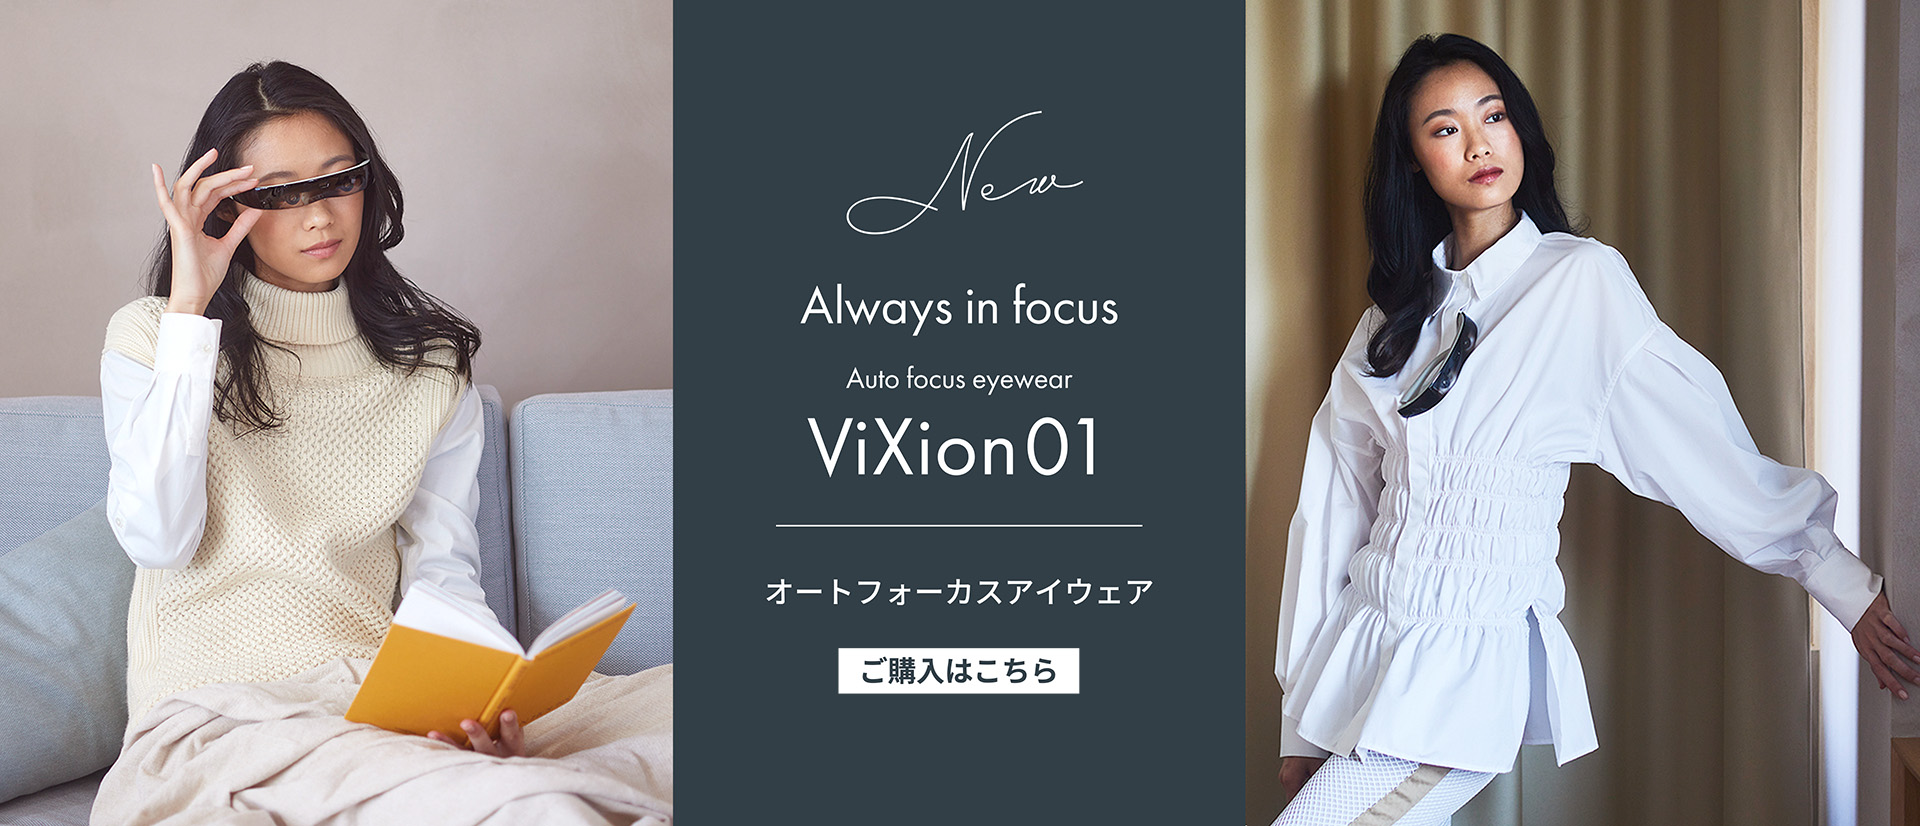 ViXion01 Developer's Voice | ViXion Inc., Ltd.